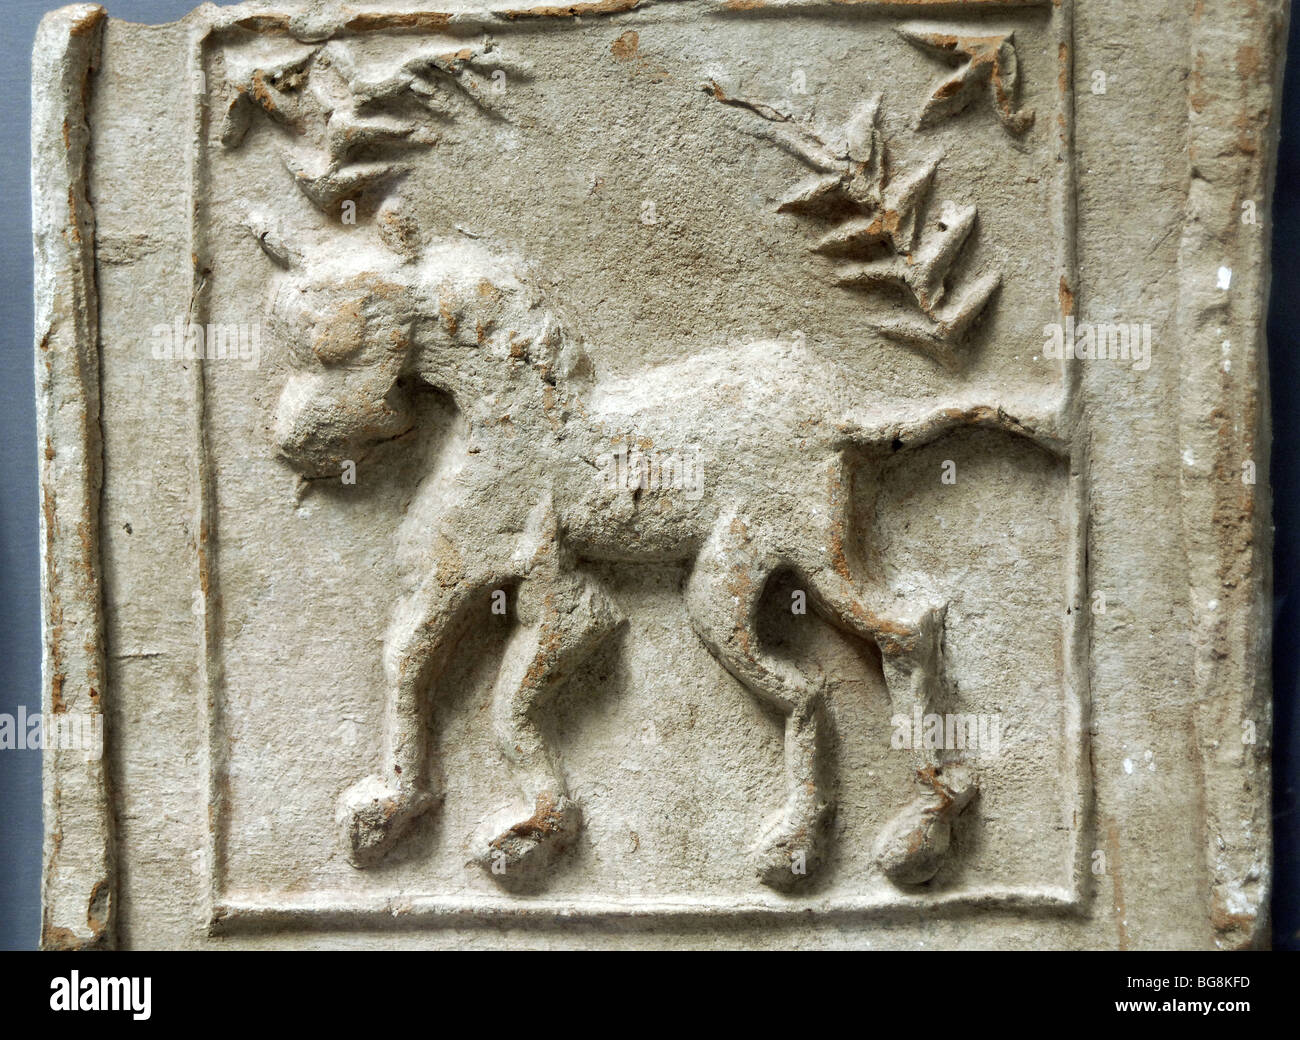 La figure d'un cheval. Terre cuite. Musée des beaux-arts de Budapest. La Hongrie. Banque D'Images